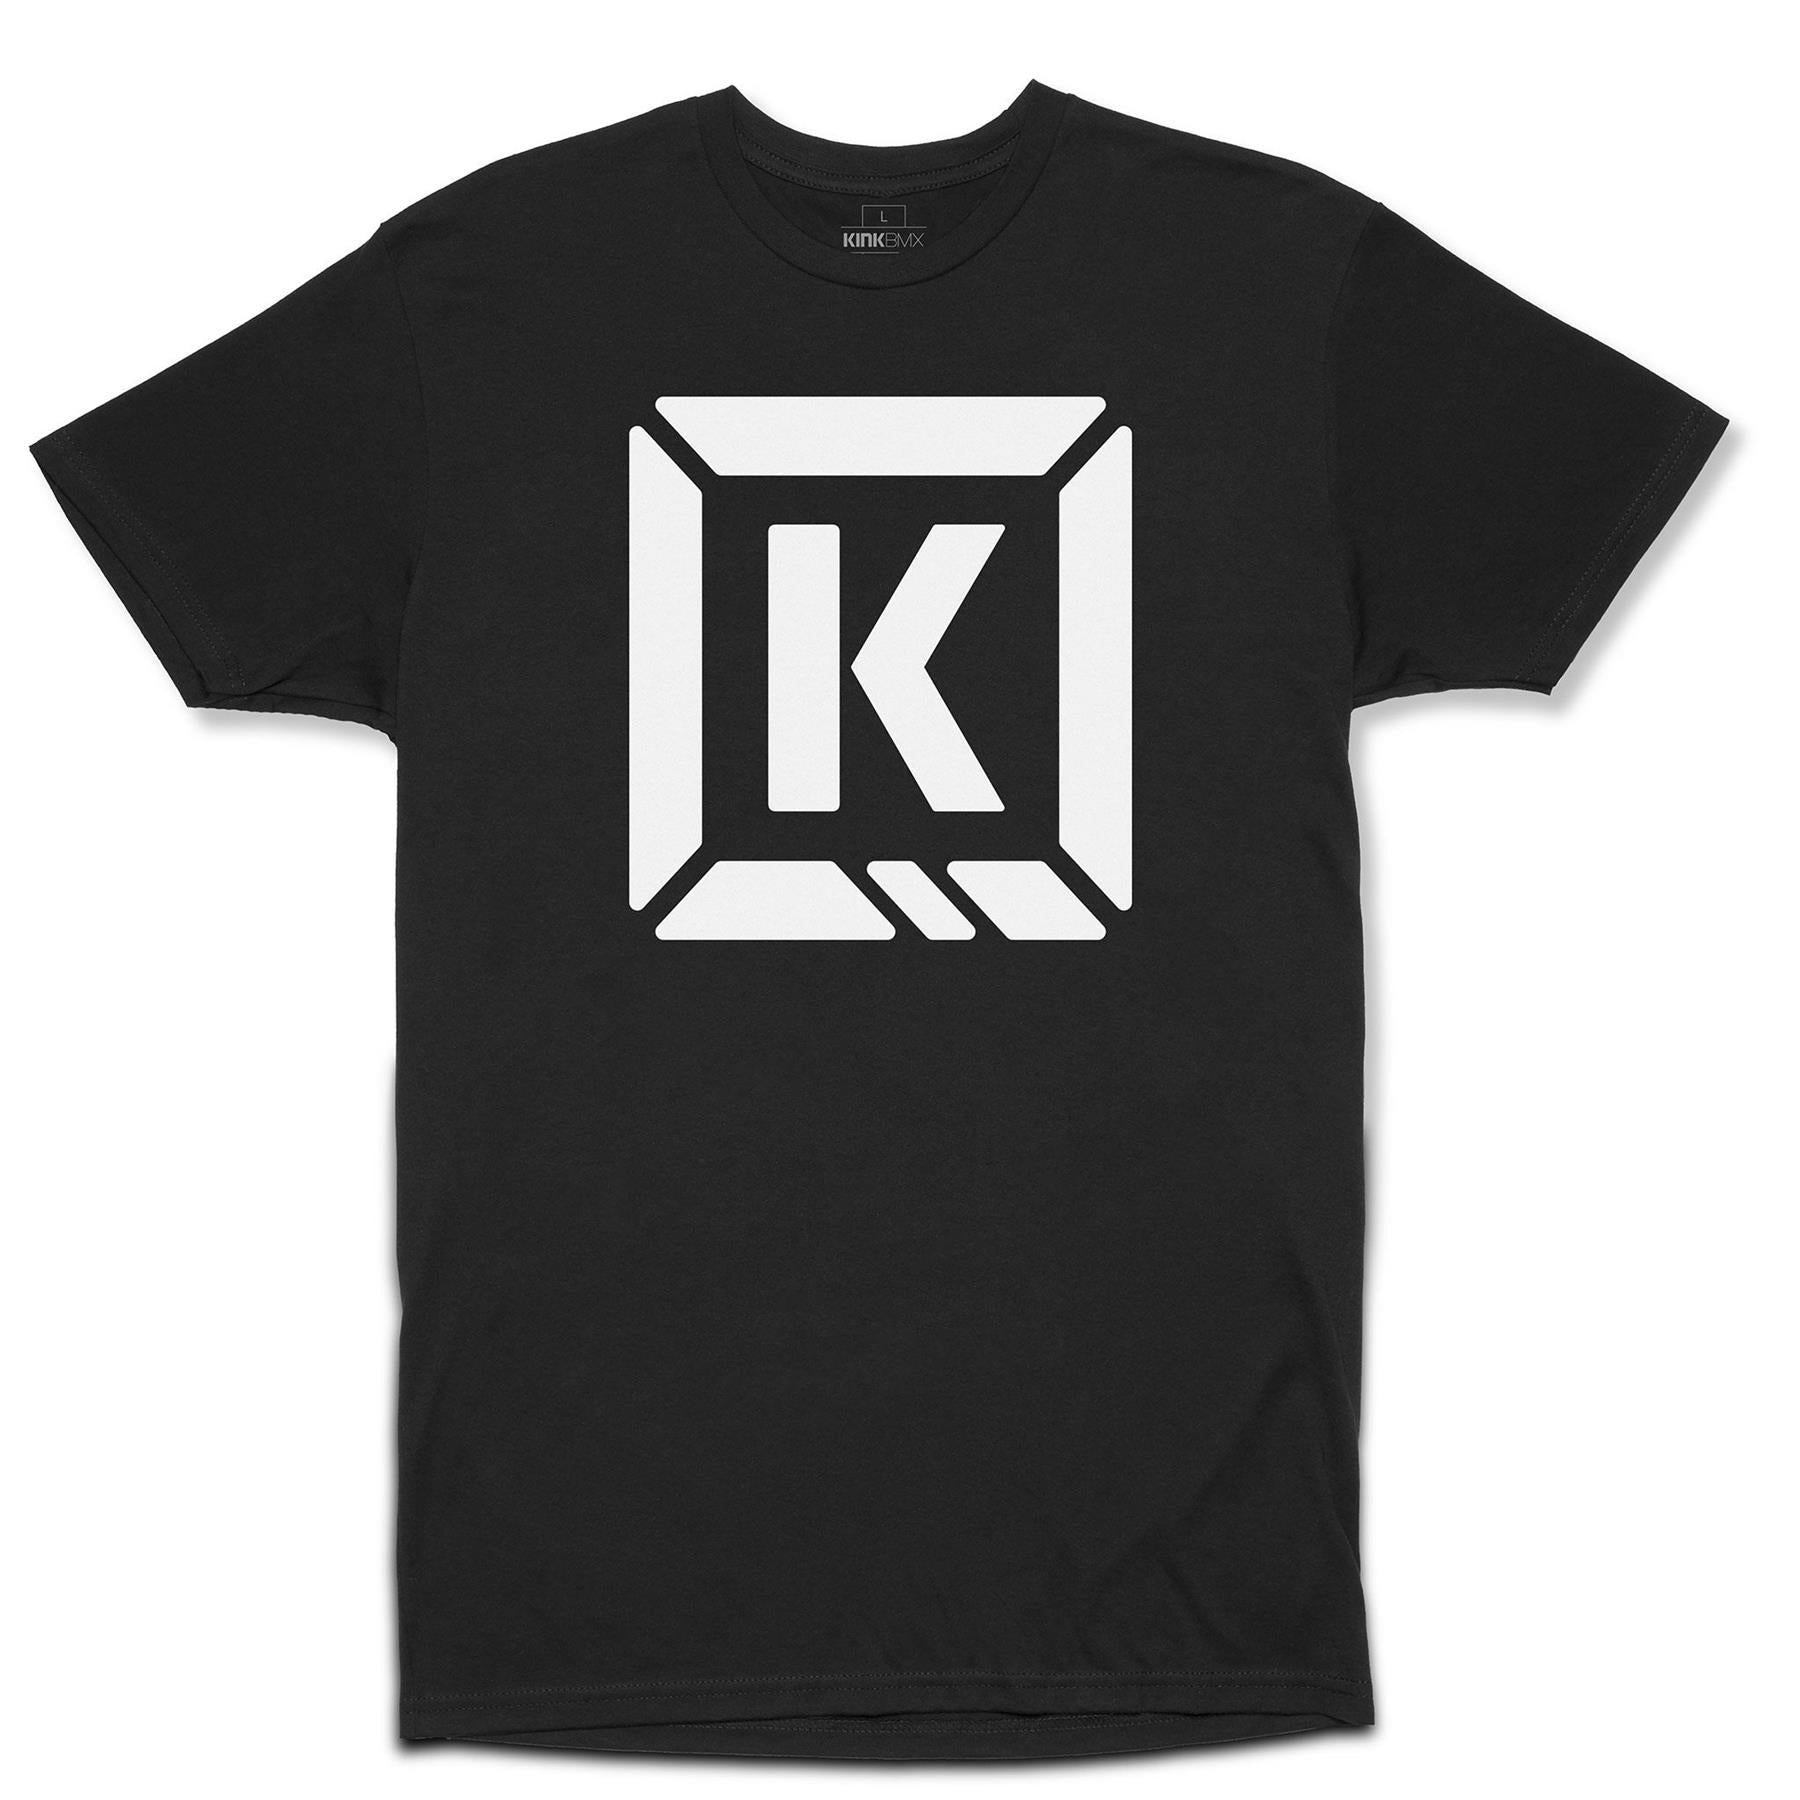 Kink Represent T-Shirt - Black/White